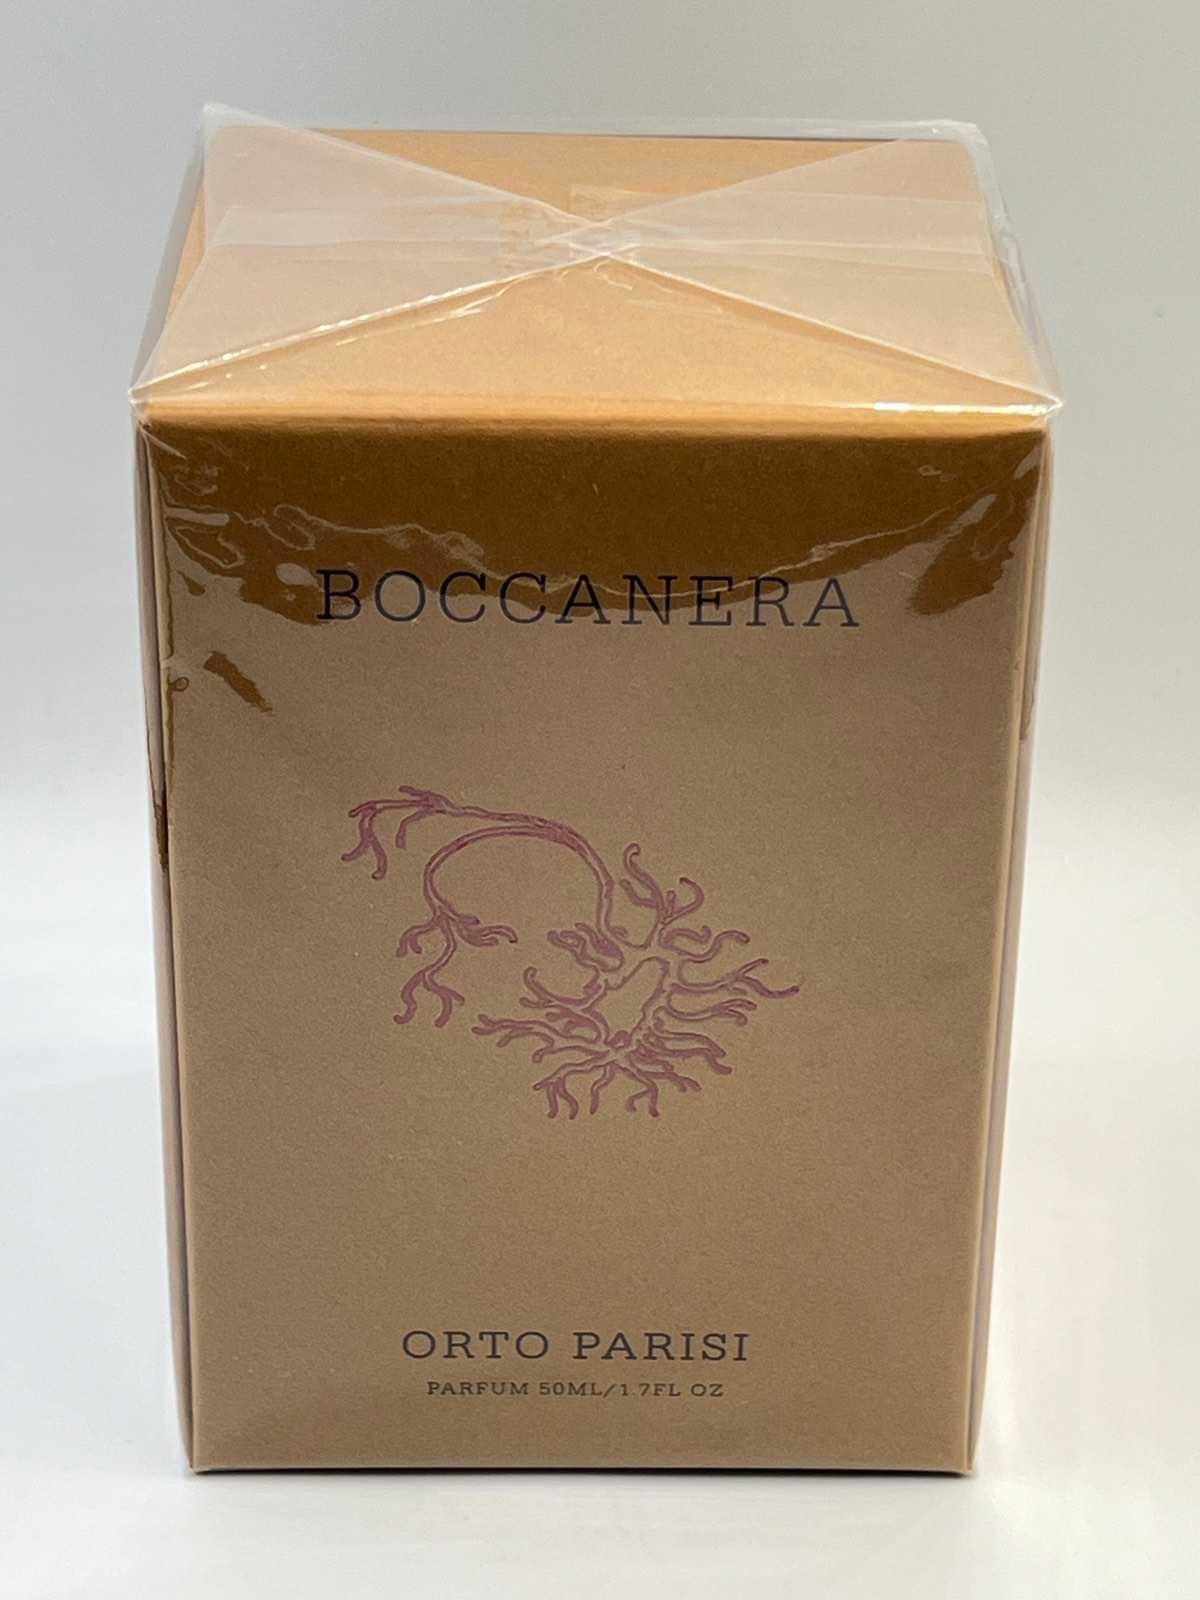 Orto Parisi Boccanera Parfum 50 мл Оригинал